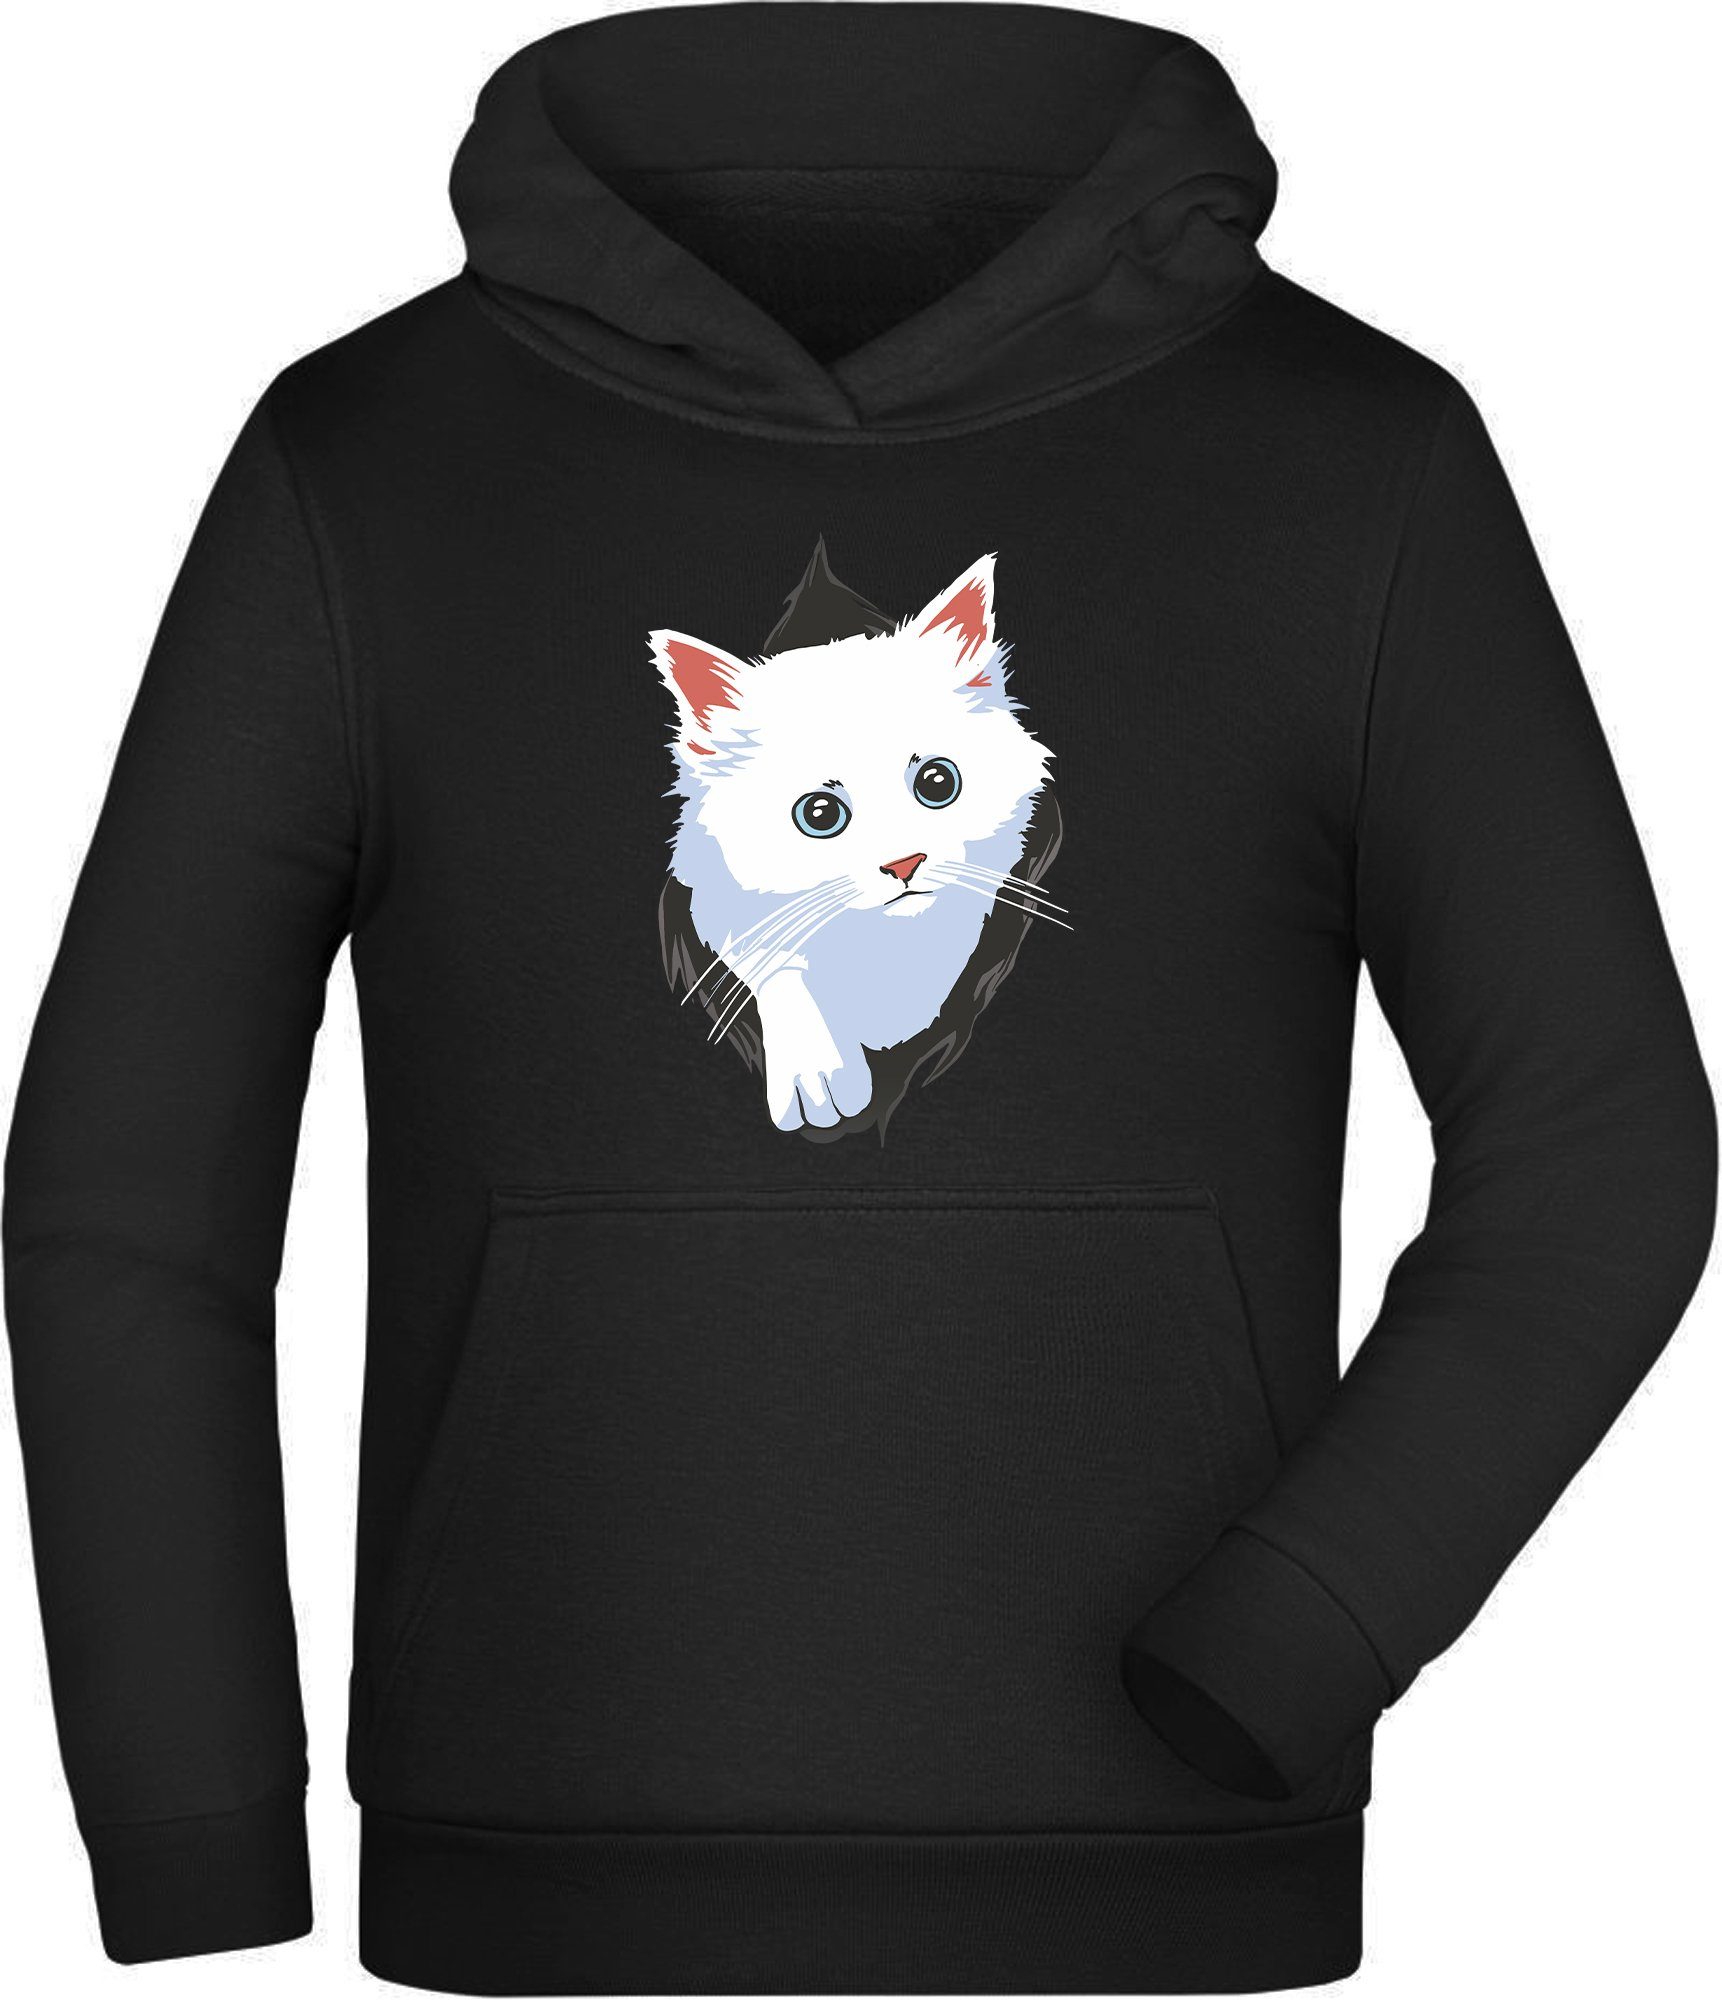 MyDesign24 Hoodie Kinder Kapuzen Sweatshirt - weiße Katze aus dem Shirt Kapuzensweater mit Aufdruck, i113